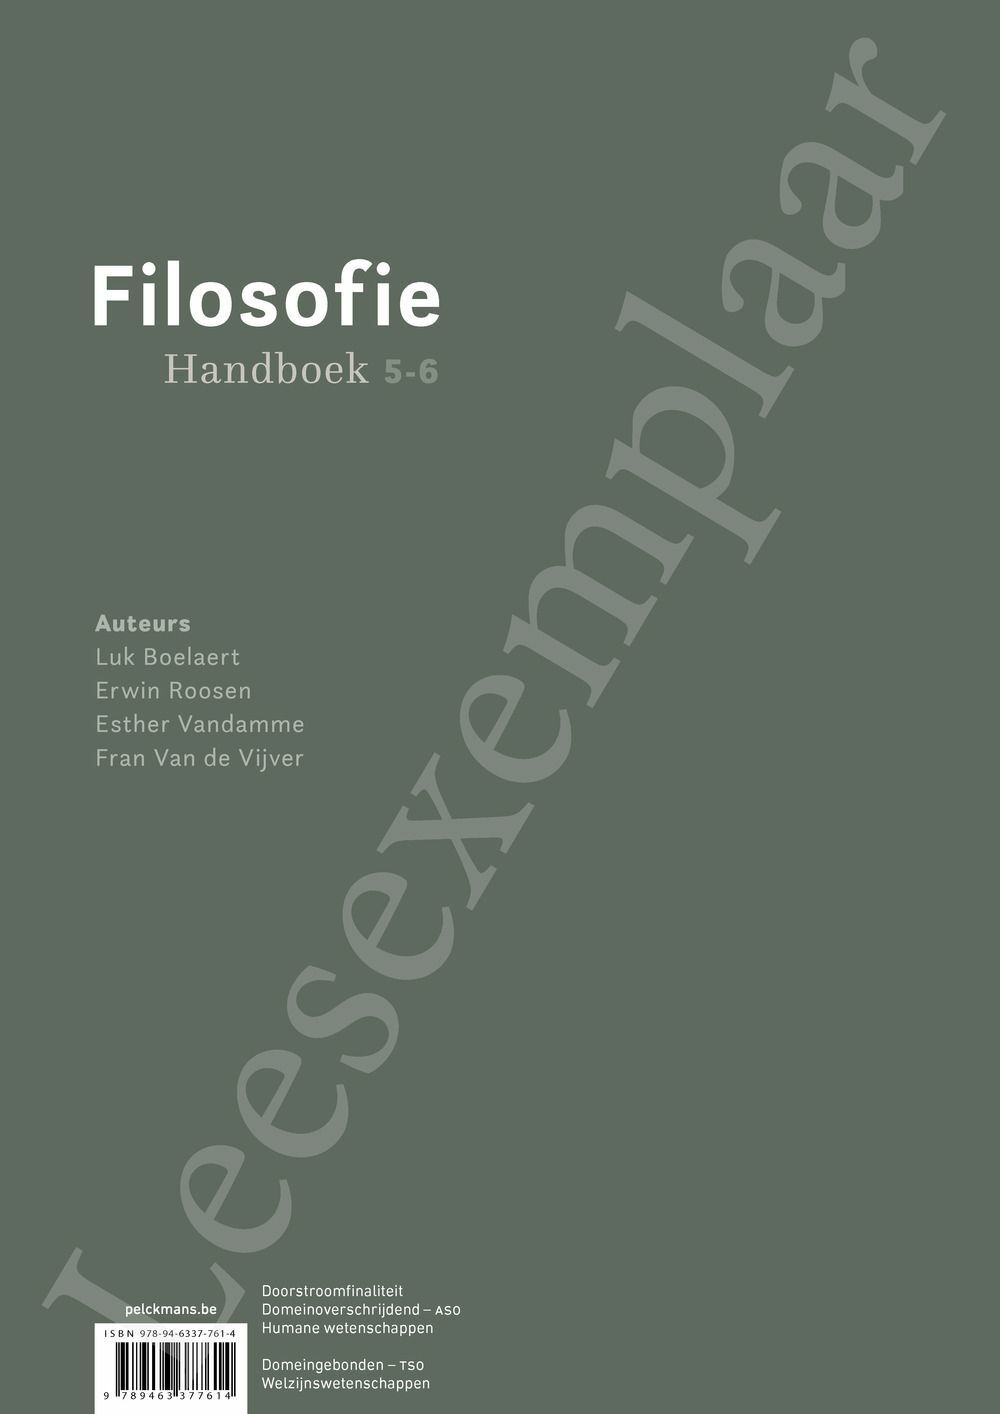 Preview: Filosofie 5-6 Handboek (incl. Pelckmans Portaal)